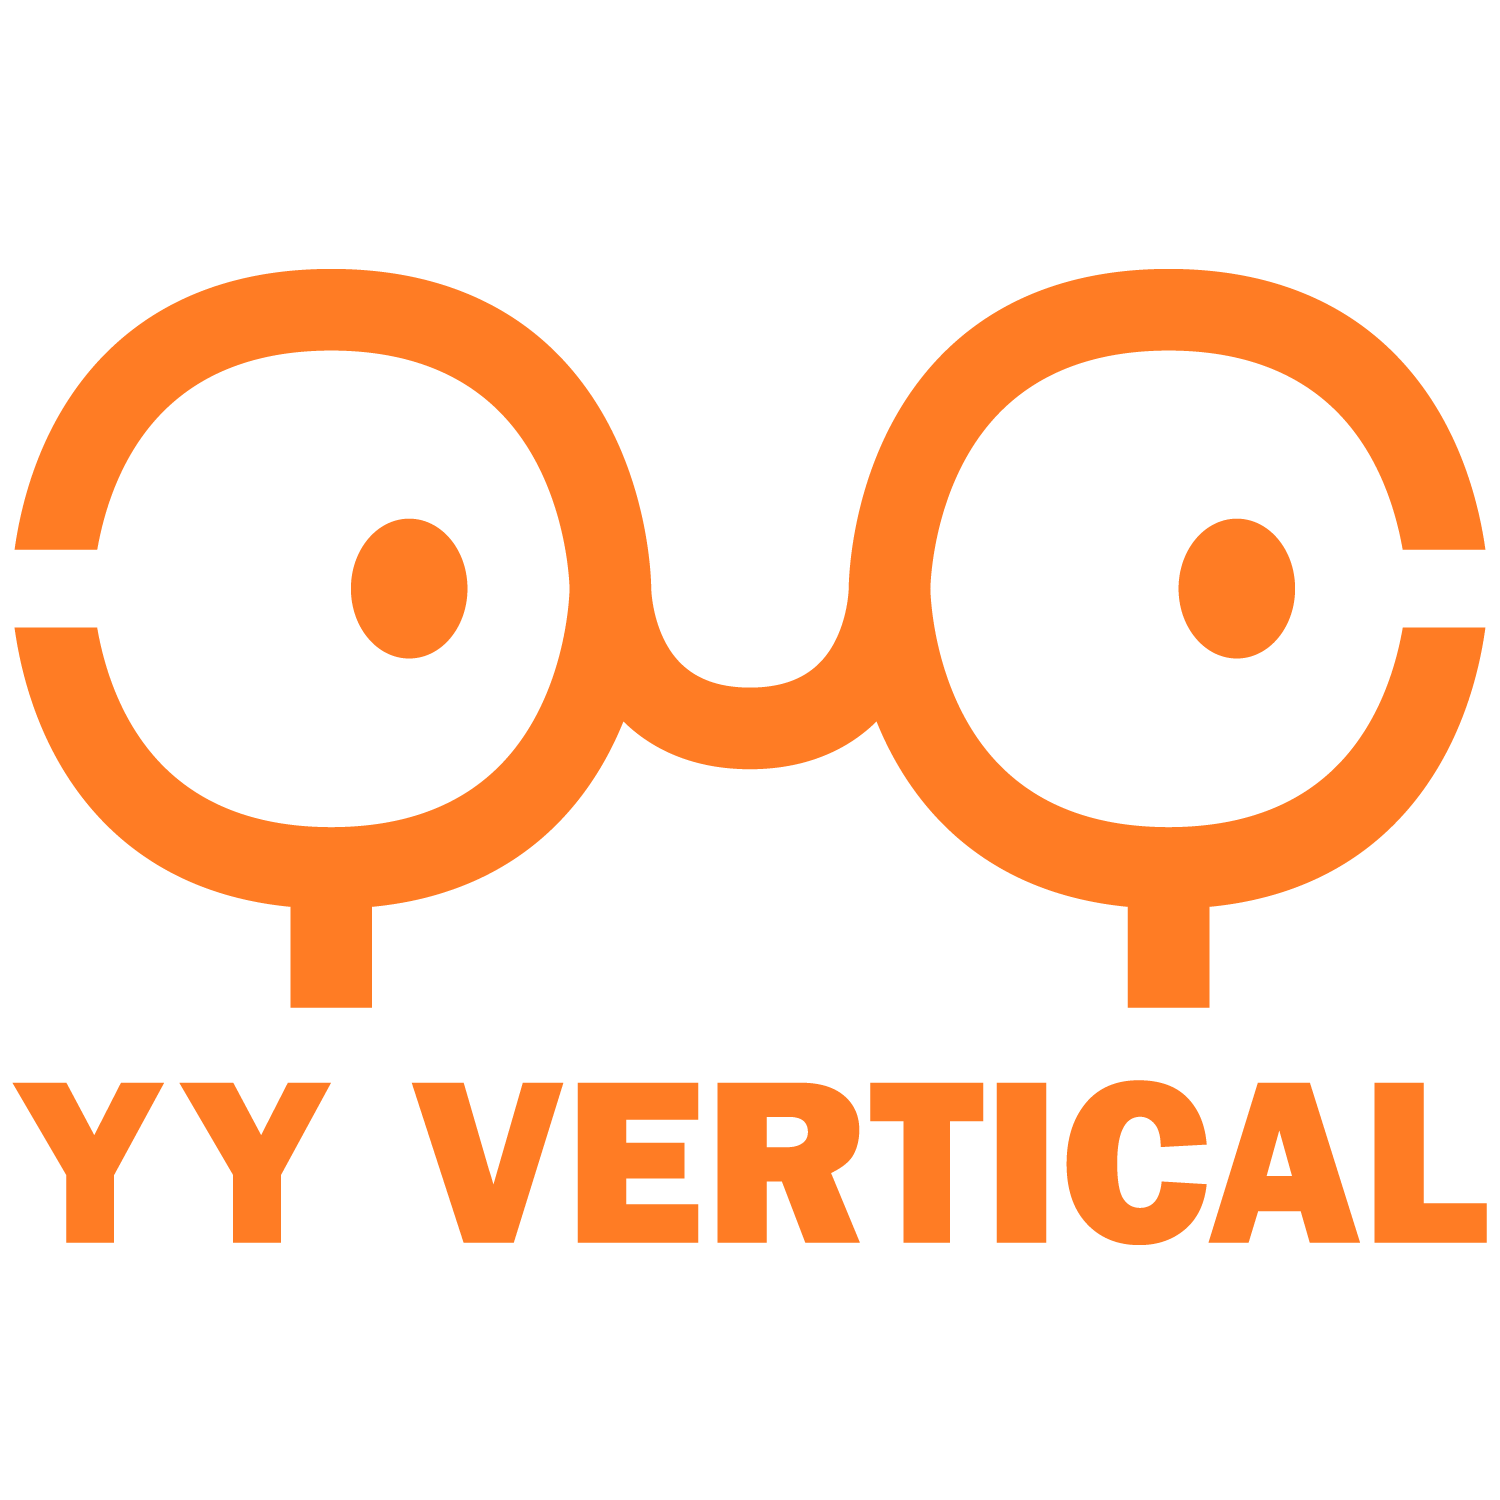 Y&Y Vertical